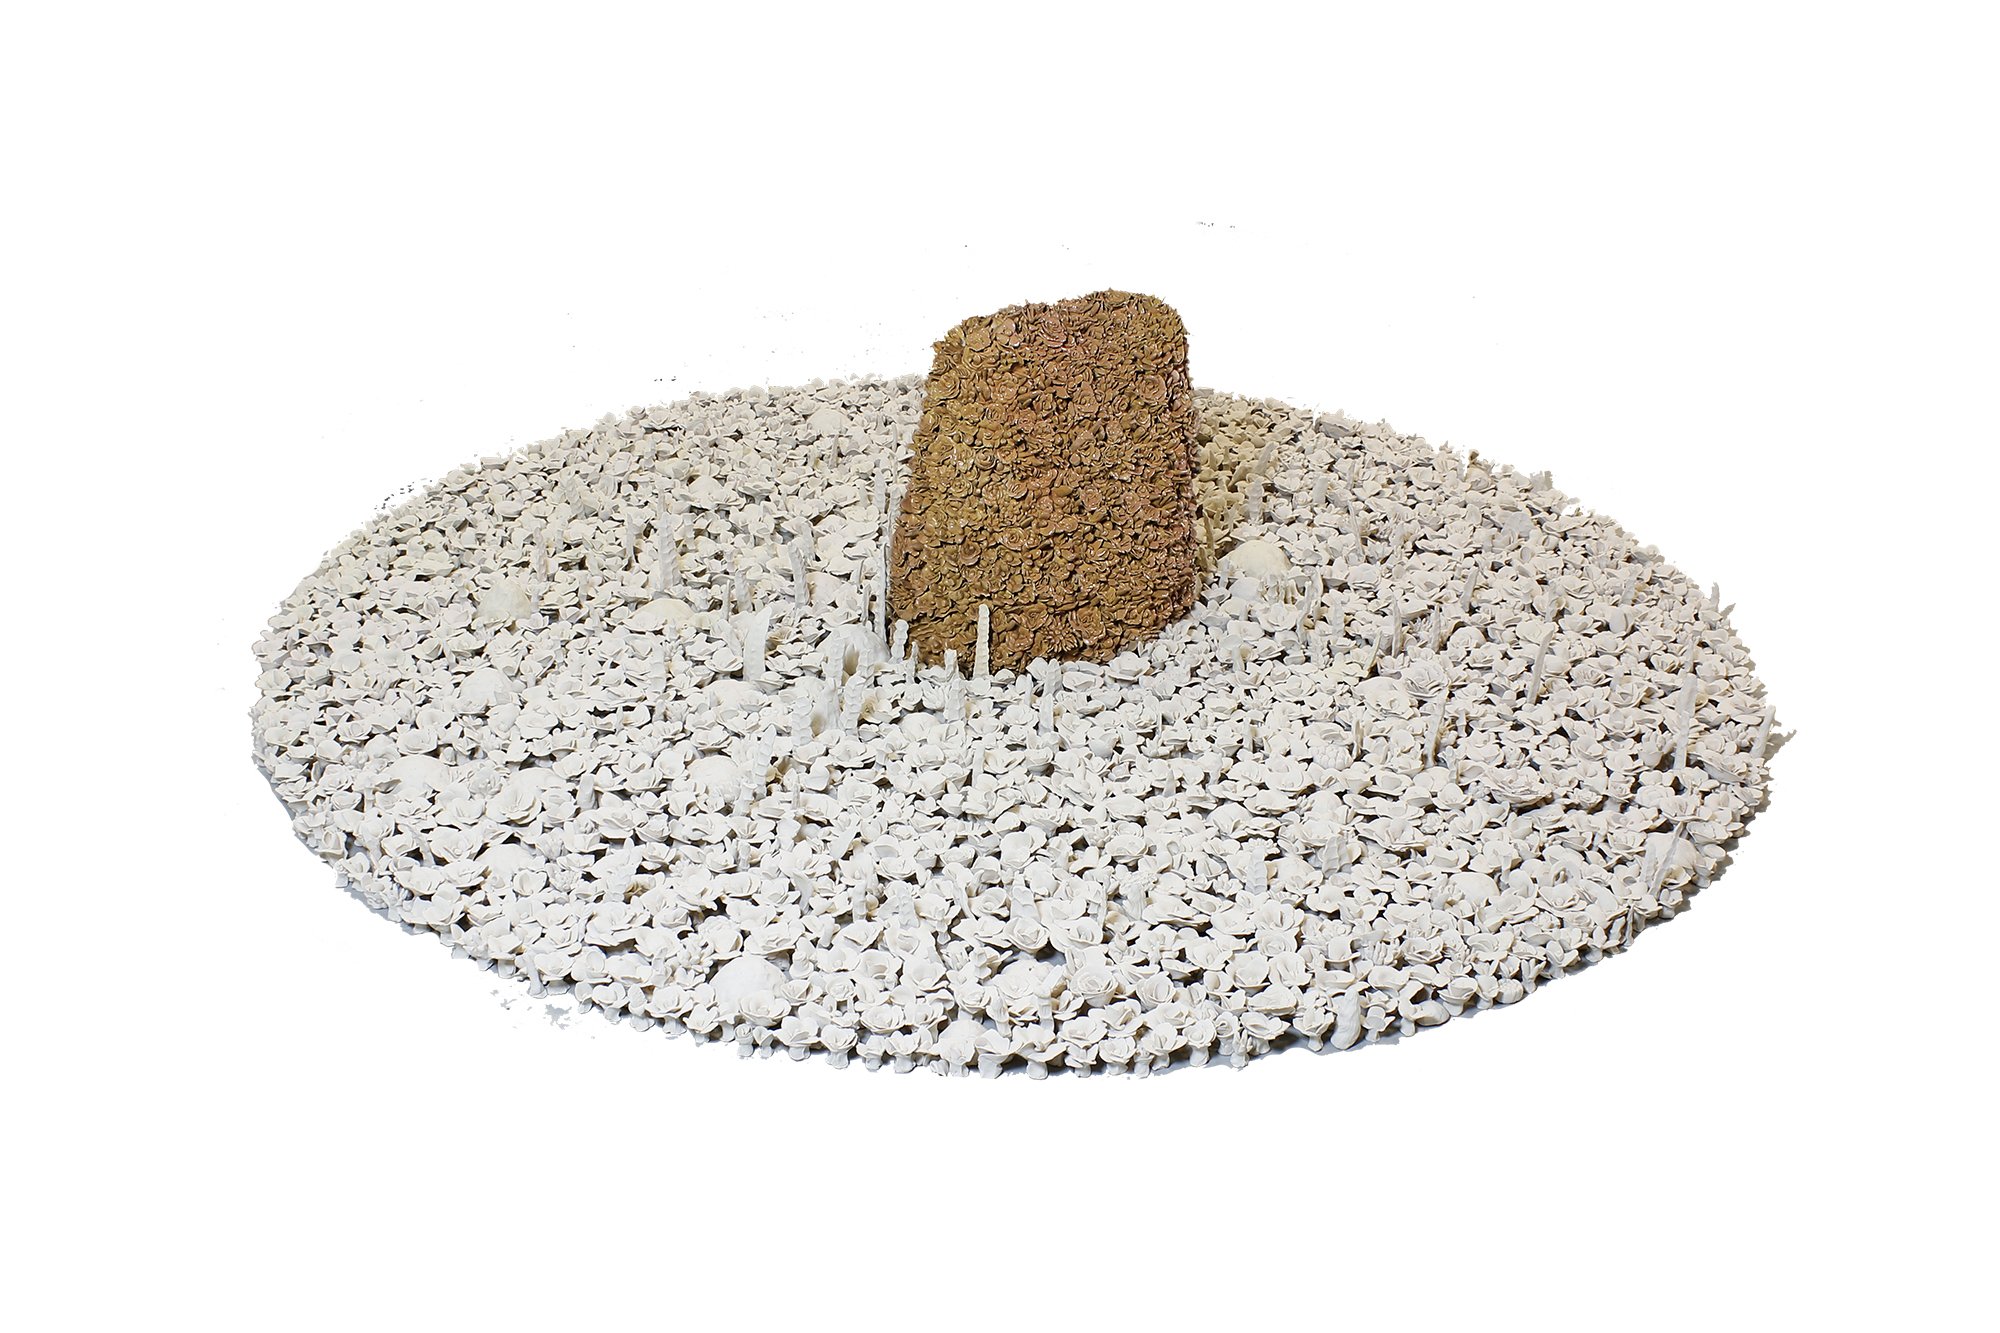  Sacred Circle - Flower Mound Ceramic 32” x 96” x 96” 2014 